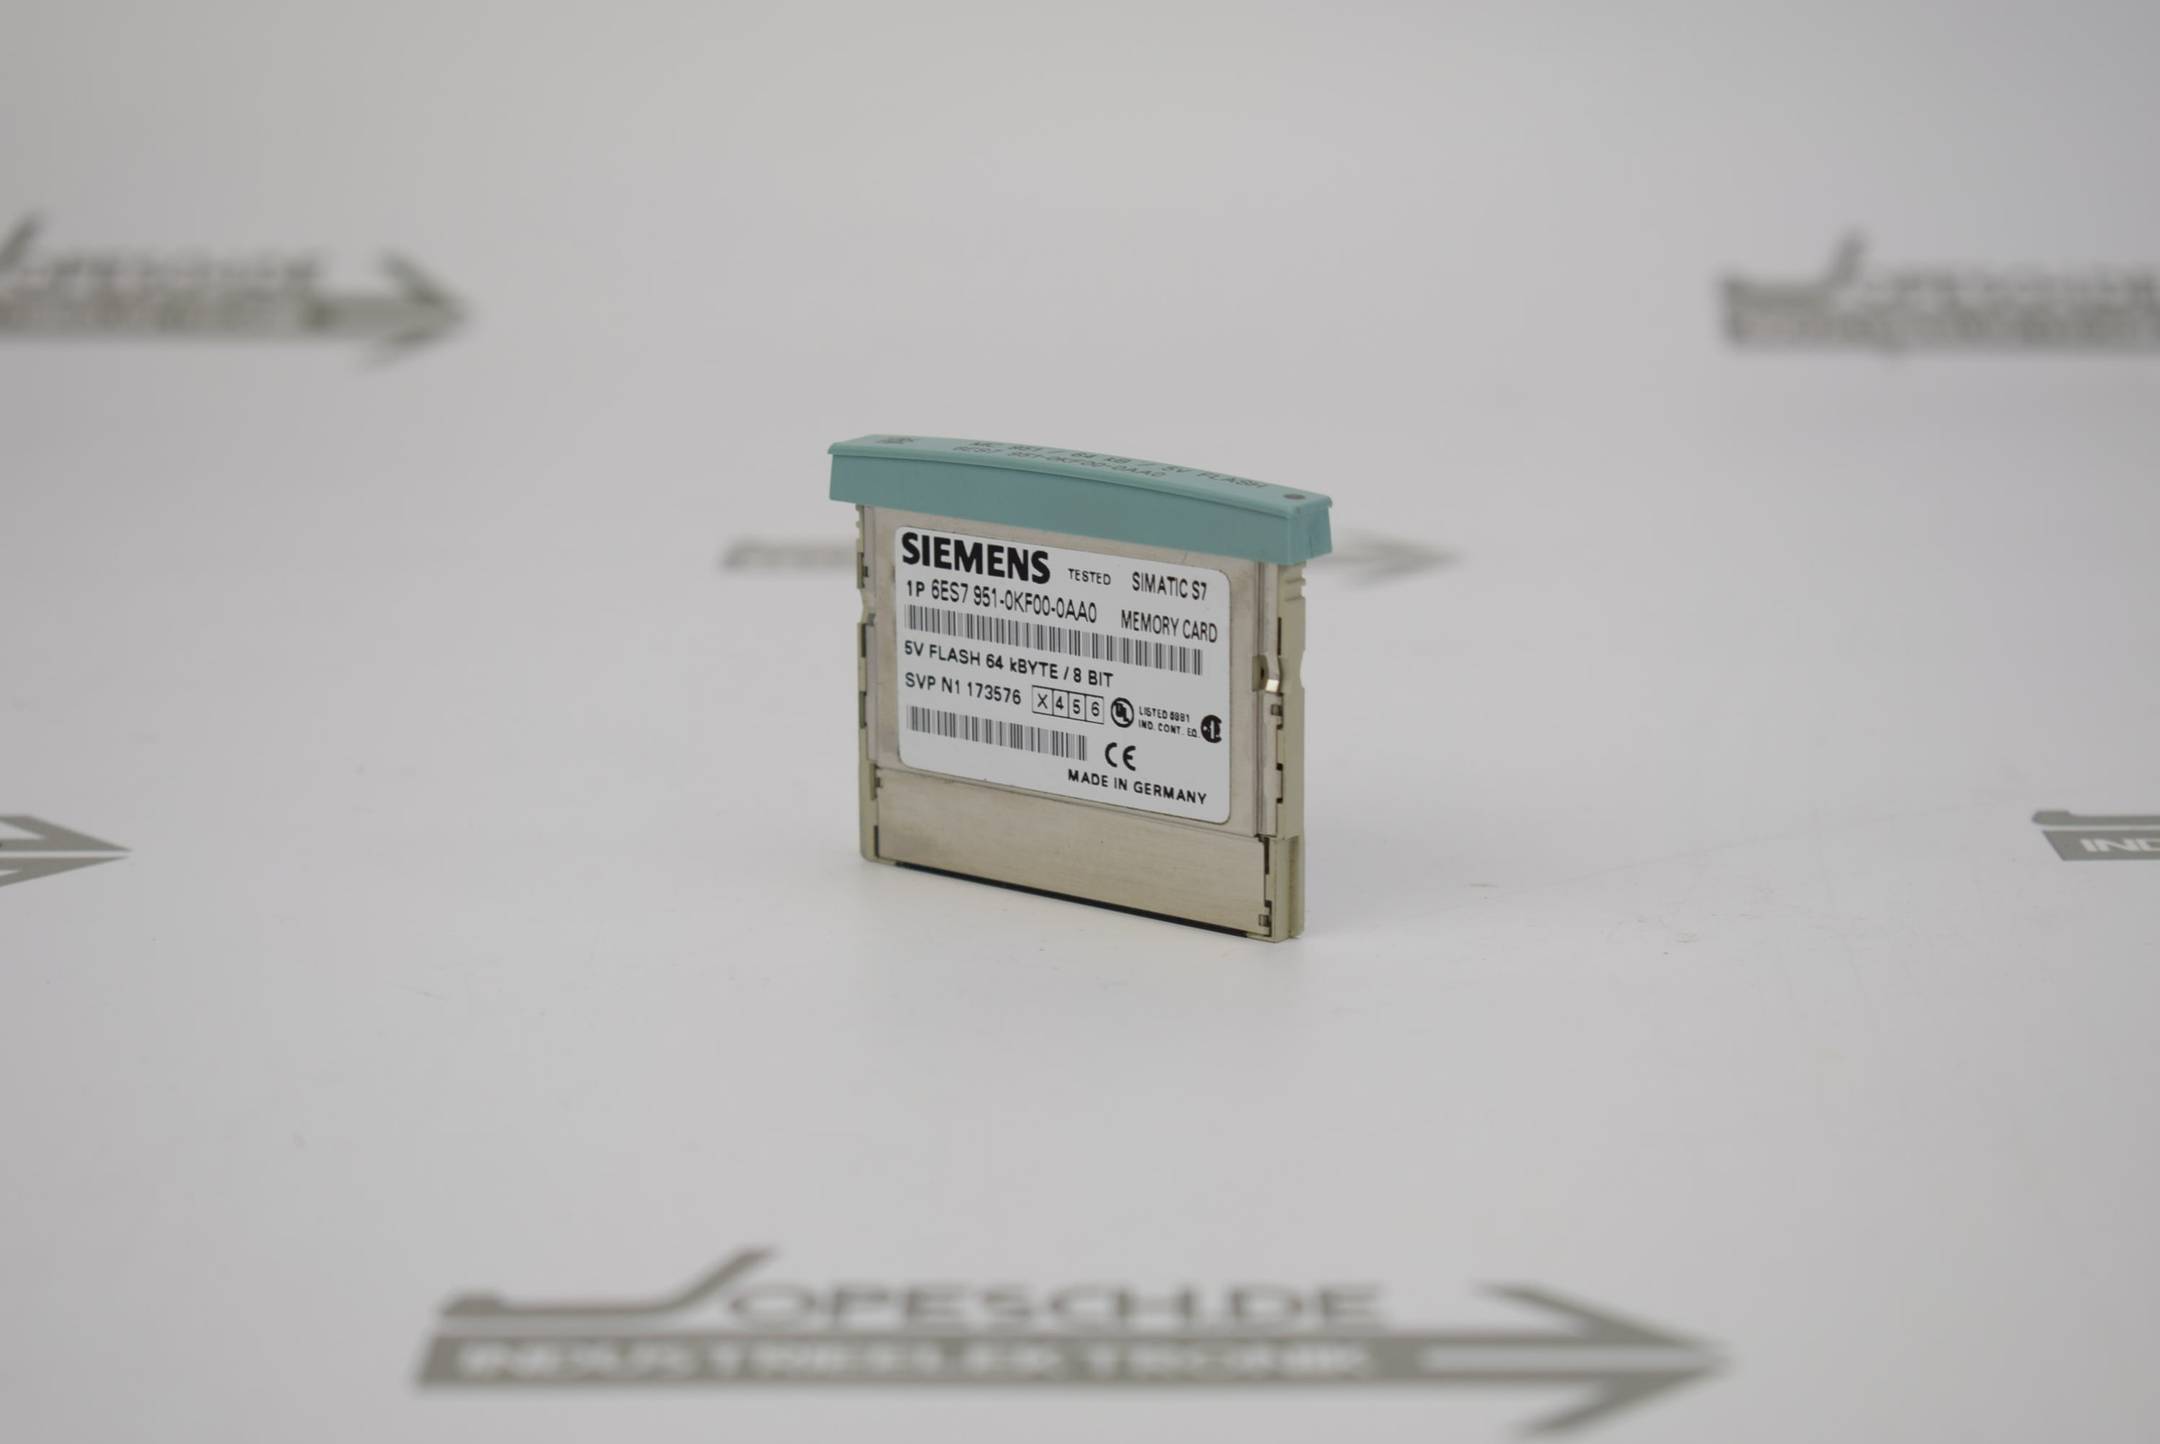 Siemens Simatic S7 Memory Card S7-300 6ES7 951-0KF00-0AA0 ( 6ES7951-0KF00-0AA0 )